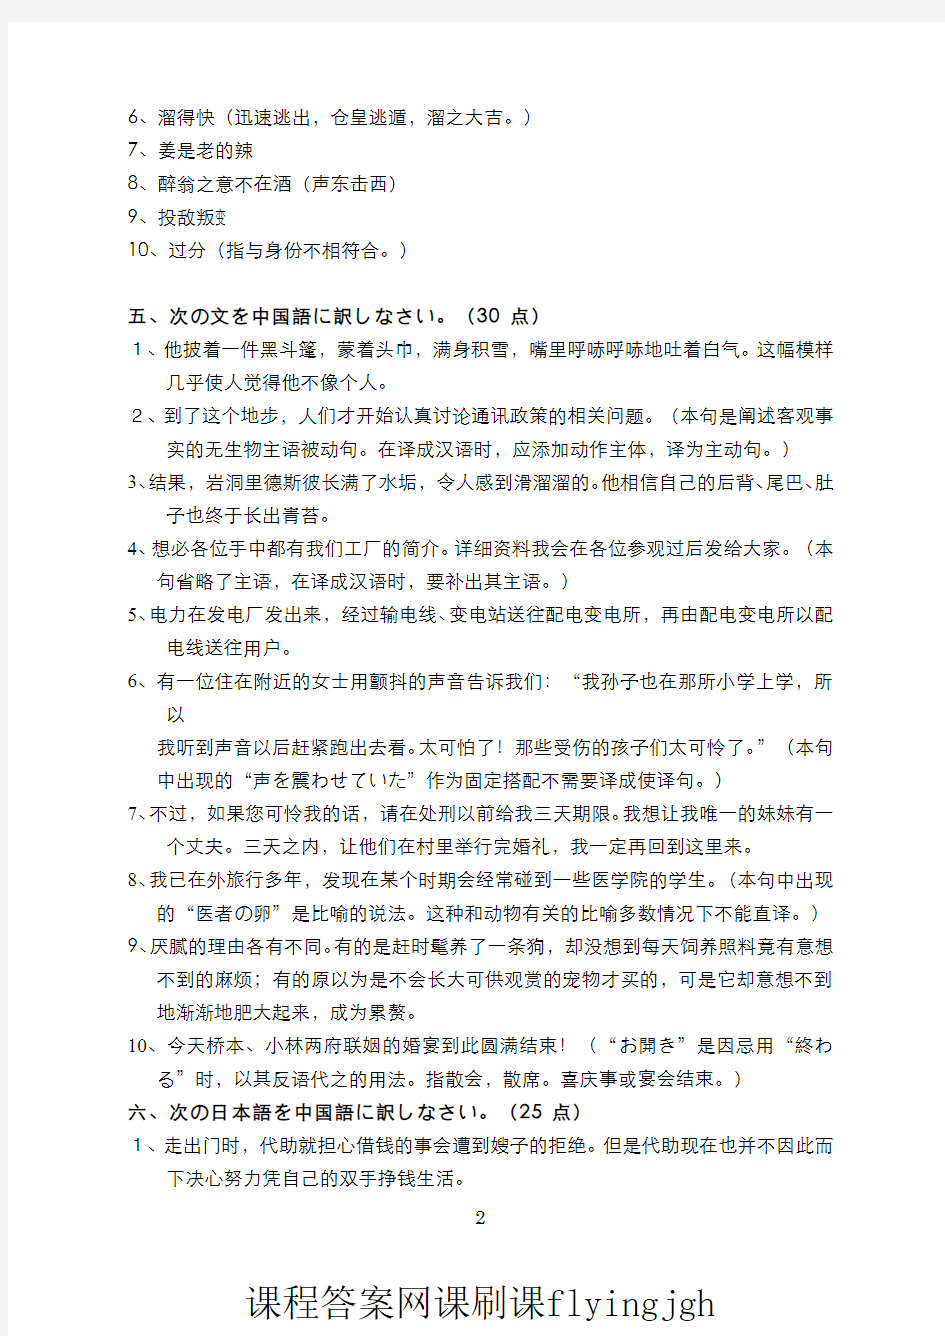 中国大学MOOC慕课爱课程(16)--日语翻译理论与实践日译汉部分期末考试试卷2(答案)网课刷课